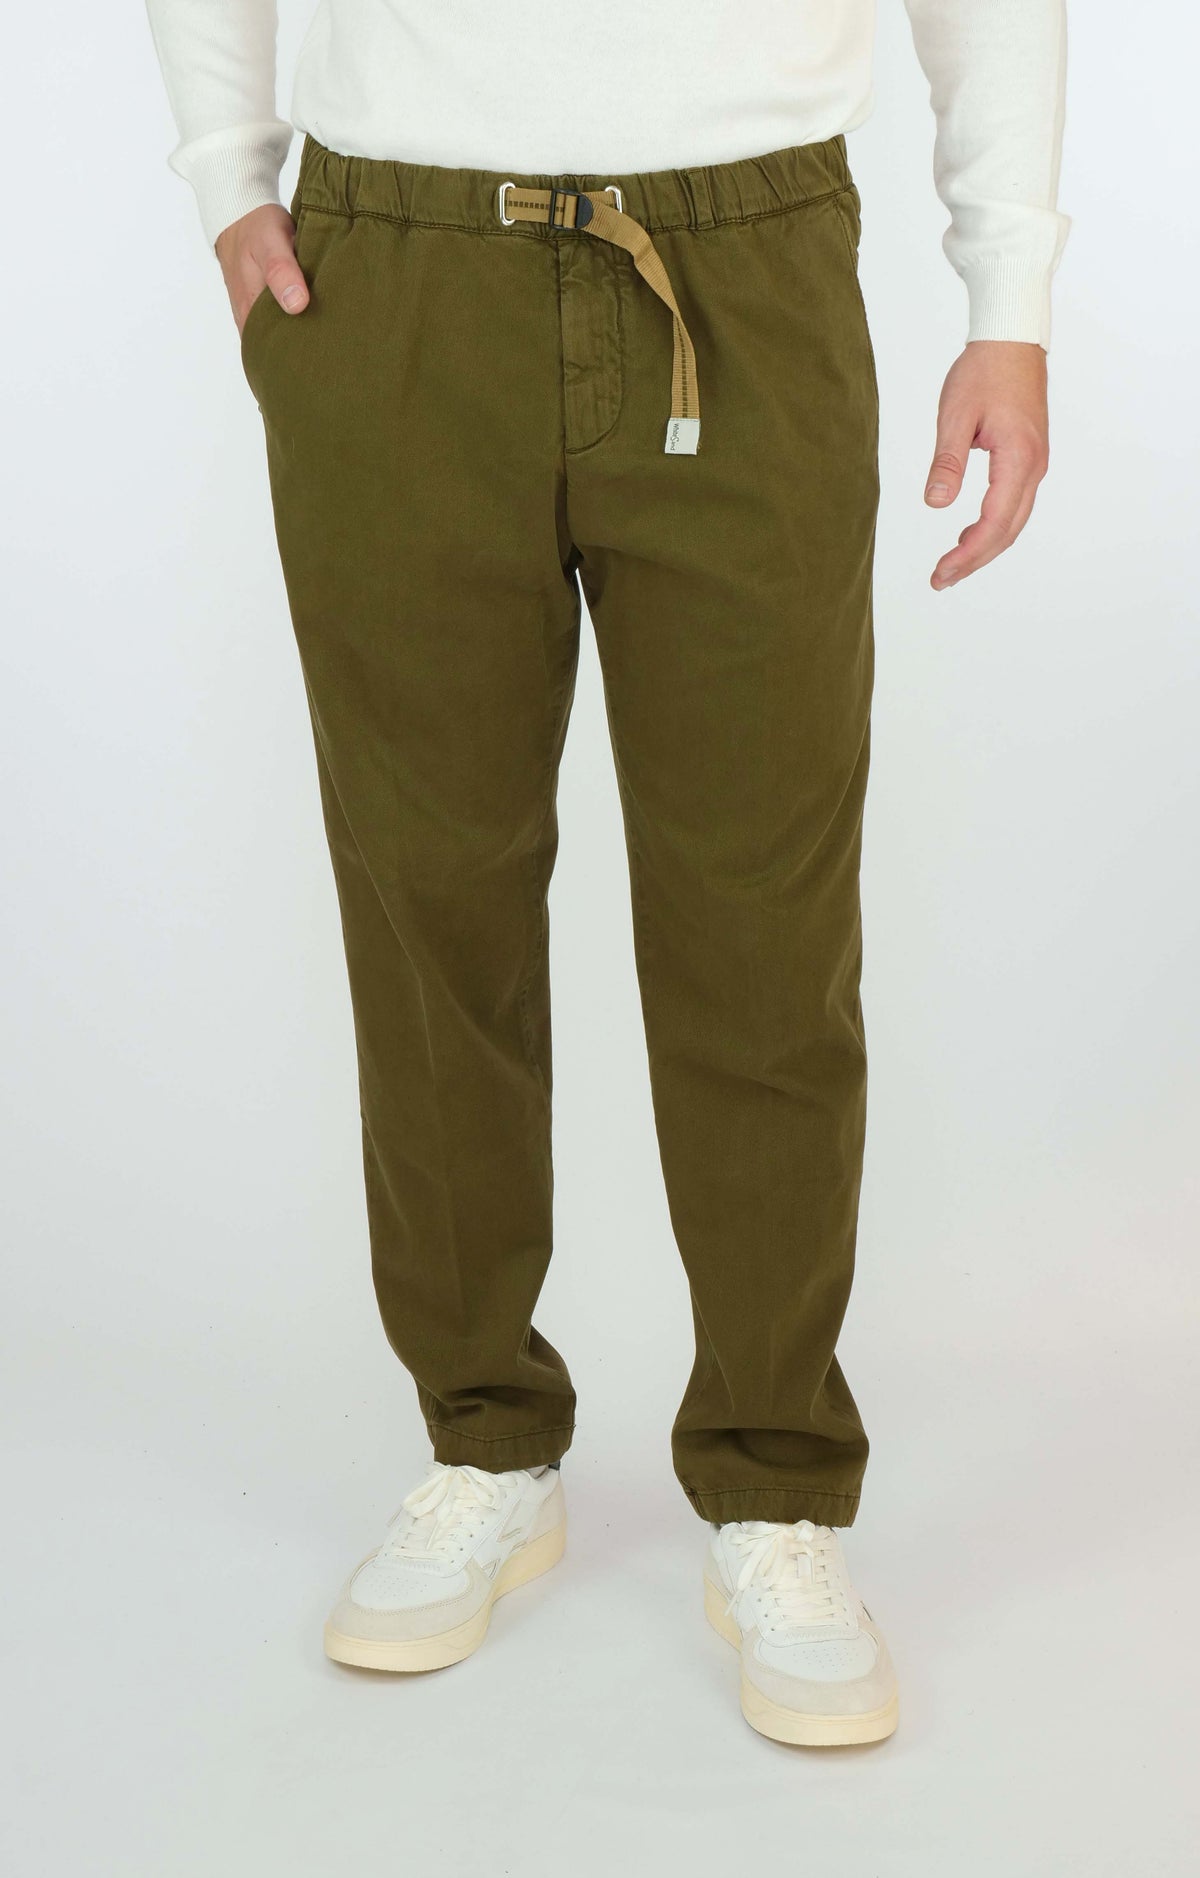 Pantalone lungo WHITE SAND 23WSU66 180 Verde Militare